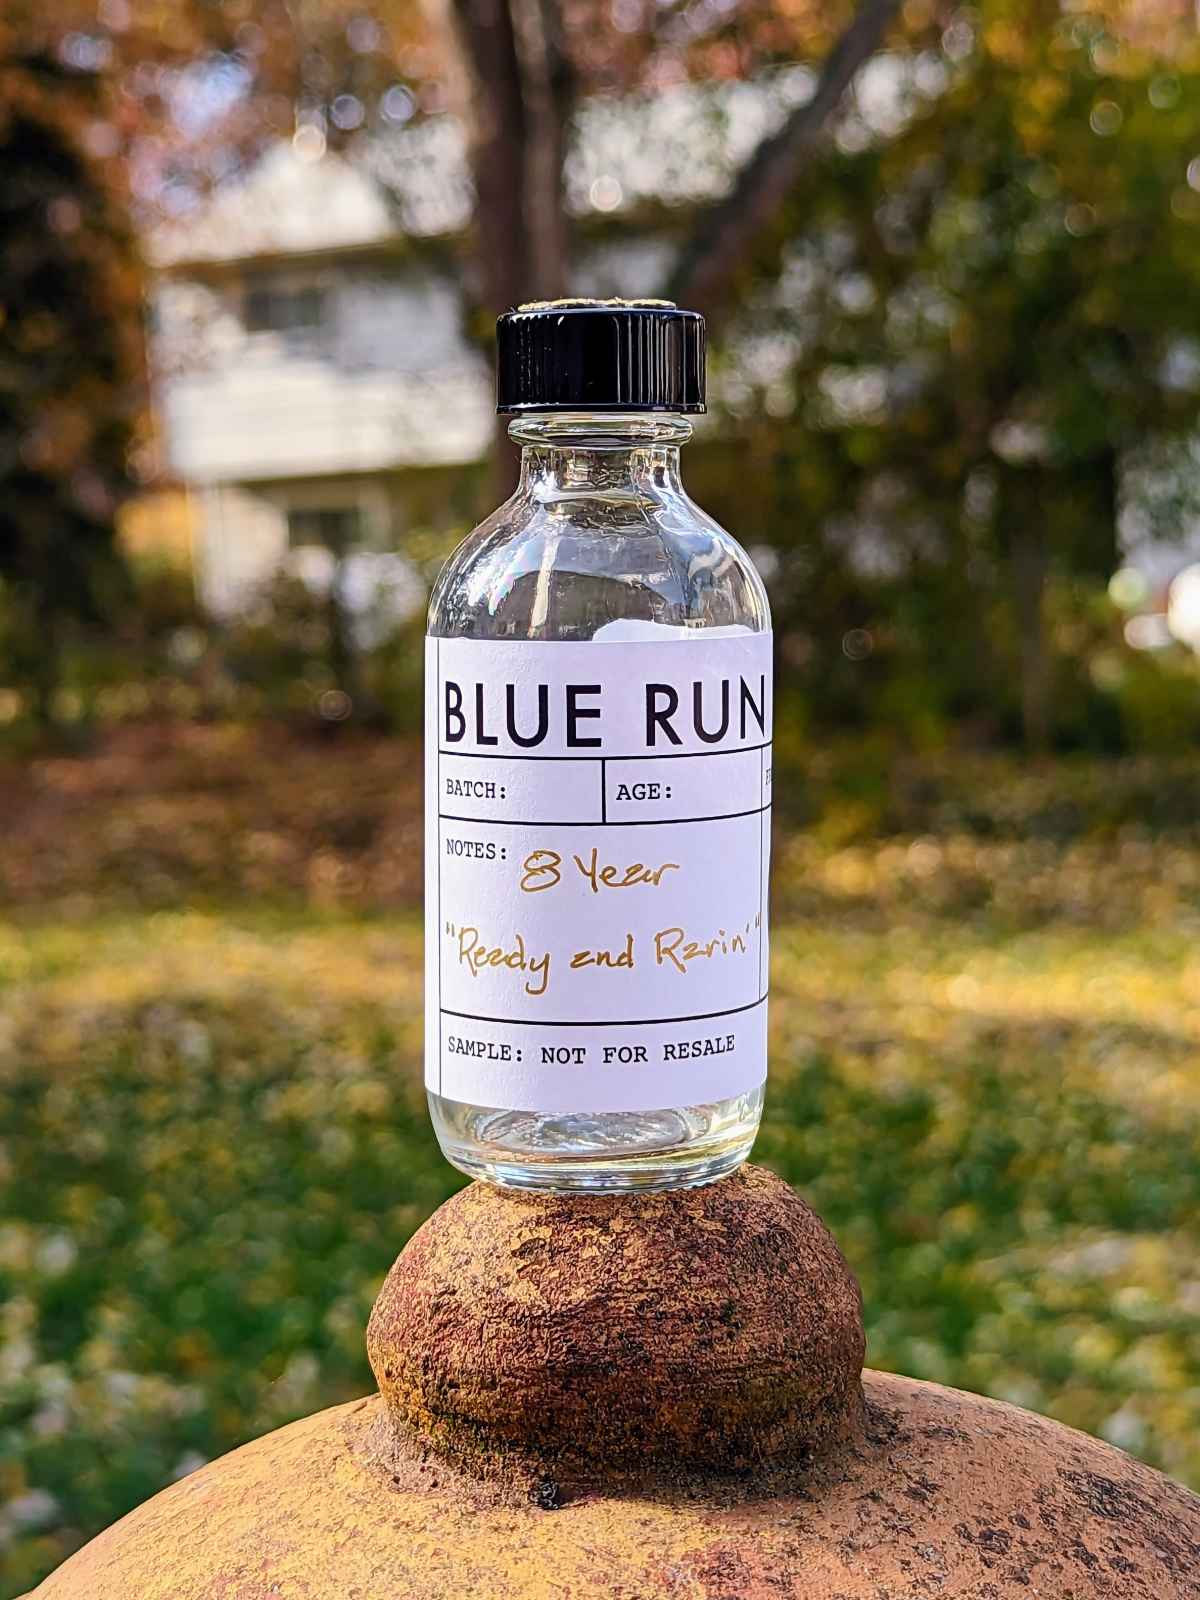 blue run 8 year single barrel ready and rarin featured